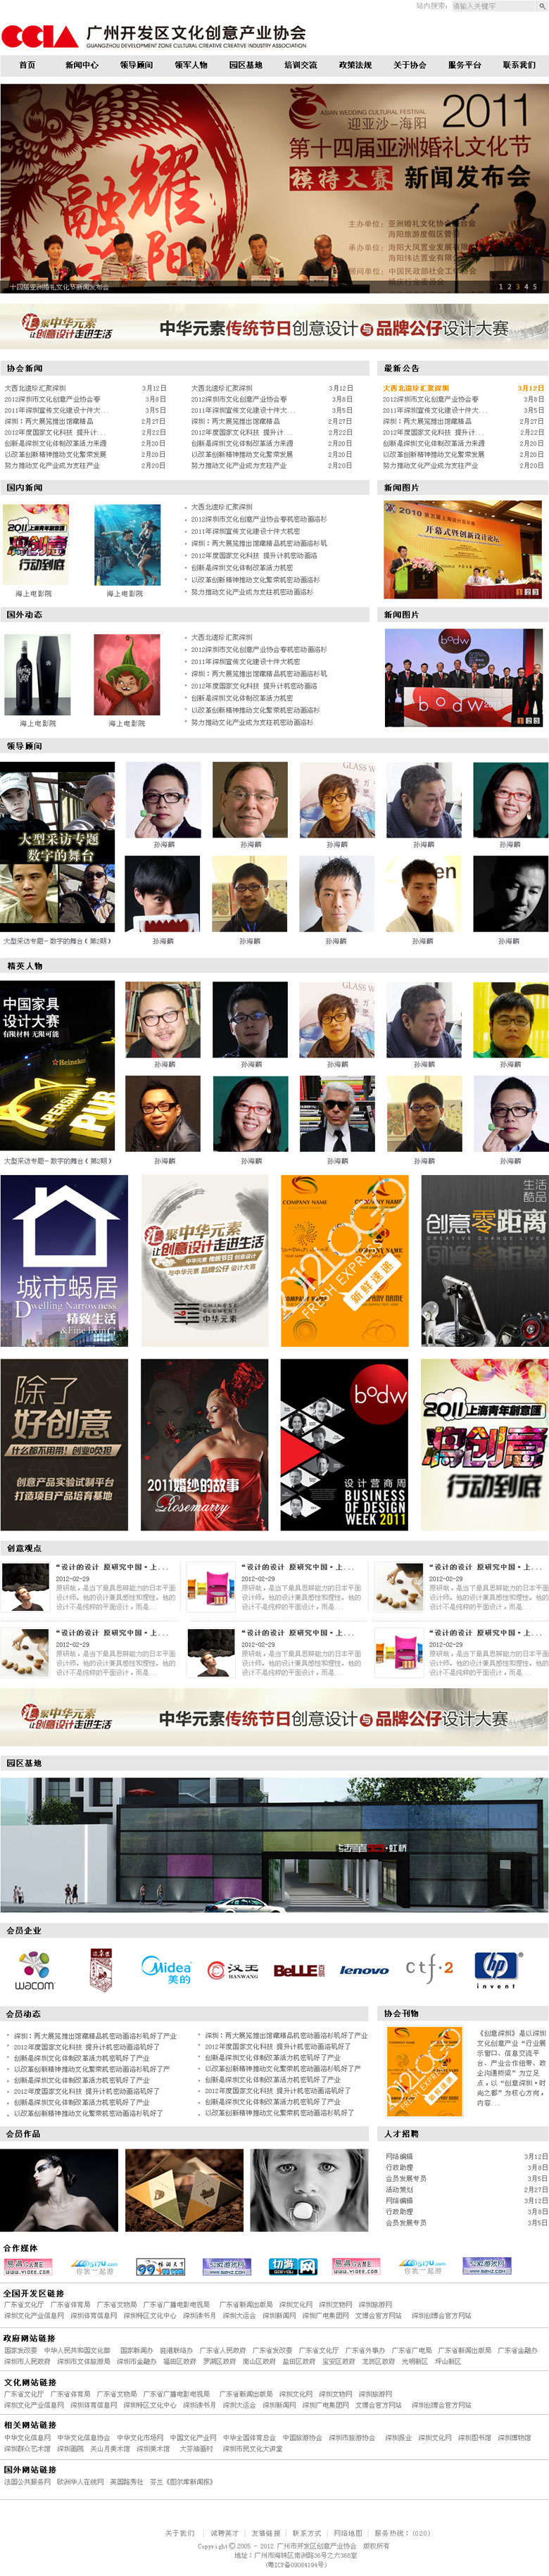 广州开发区文化创意产业协会